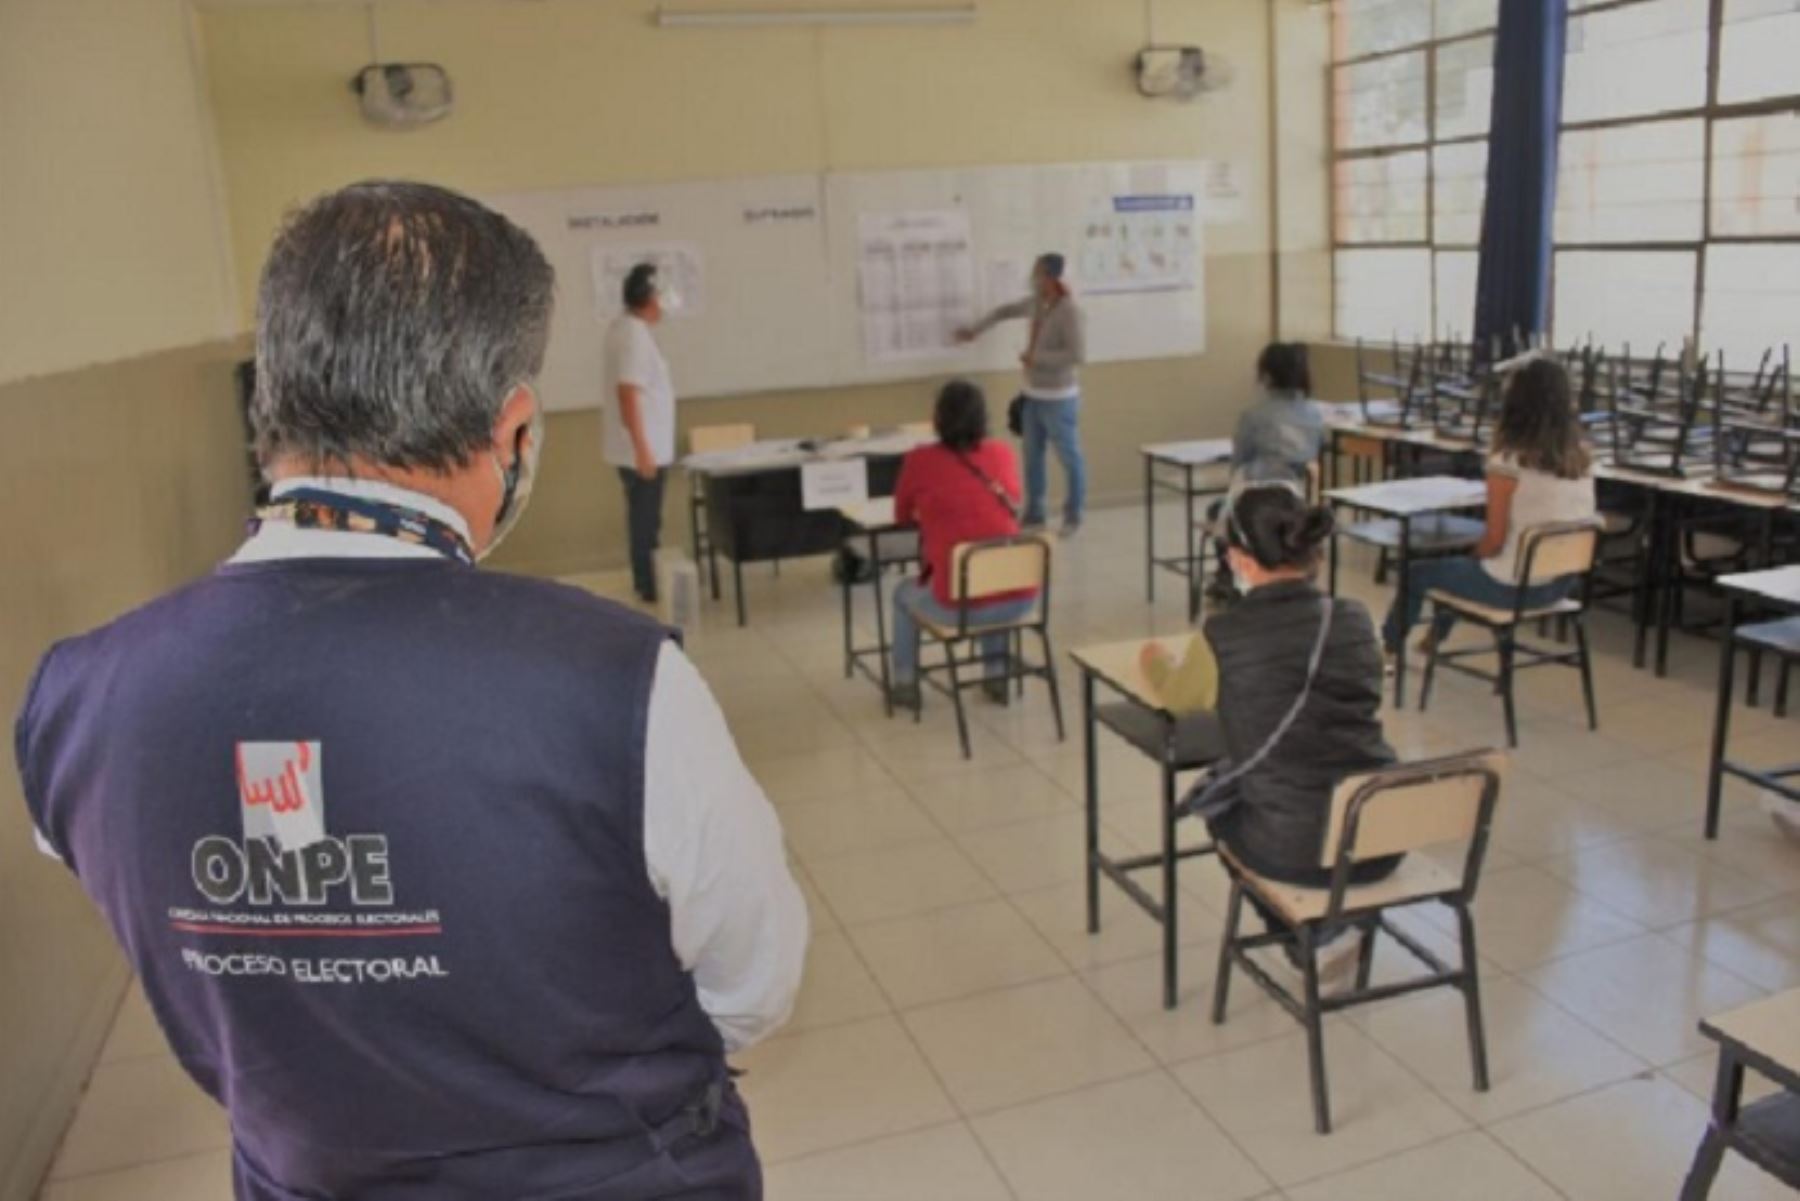 El personal de la ODPE Arequipa 1 capacitó a más de 2,000 miembros de mesa en la jornada de capacitación presencial, mientras que la ODPE Arequipa 2 asesoró a más de 1,300 personas que tendrán a su cargo el proceso electoral de abril.